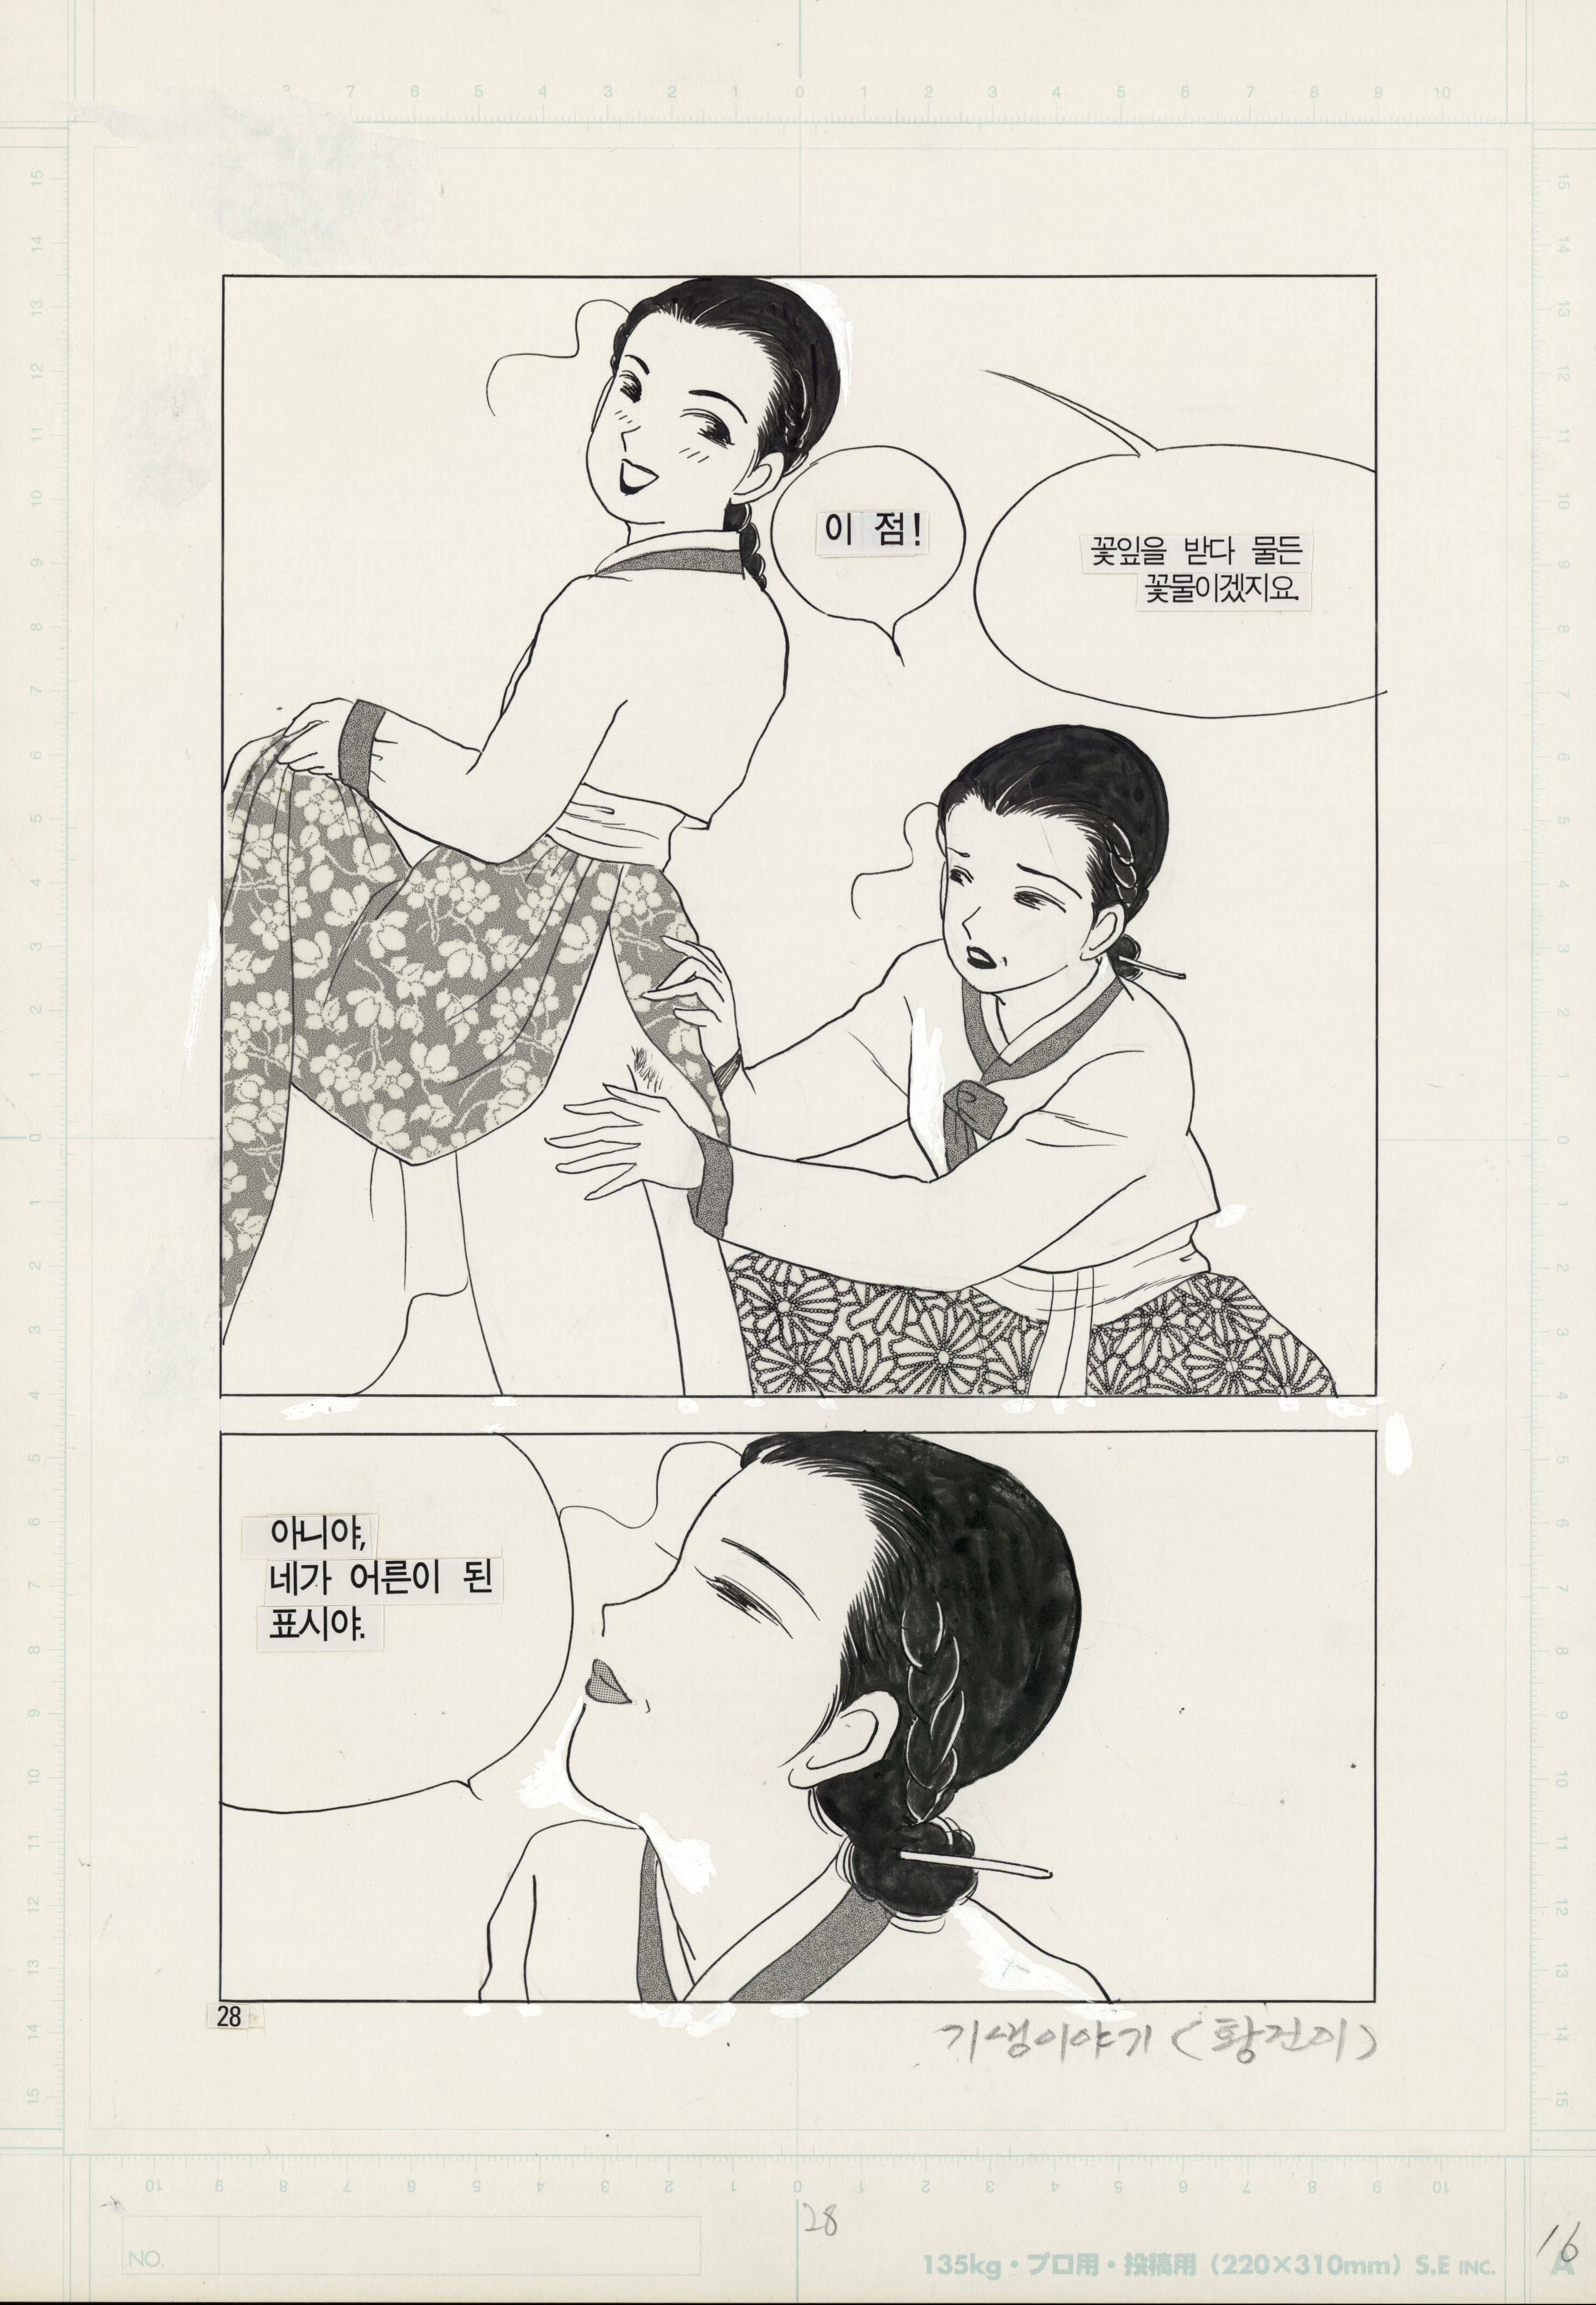 Manhwa & webtoon : l'envol de la BD coréenne - © KIM Dong-hwa, Gisaeng’s story / Daewon, 1998 